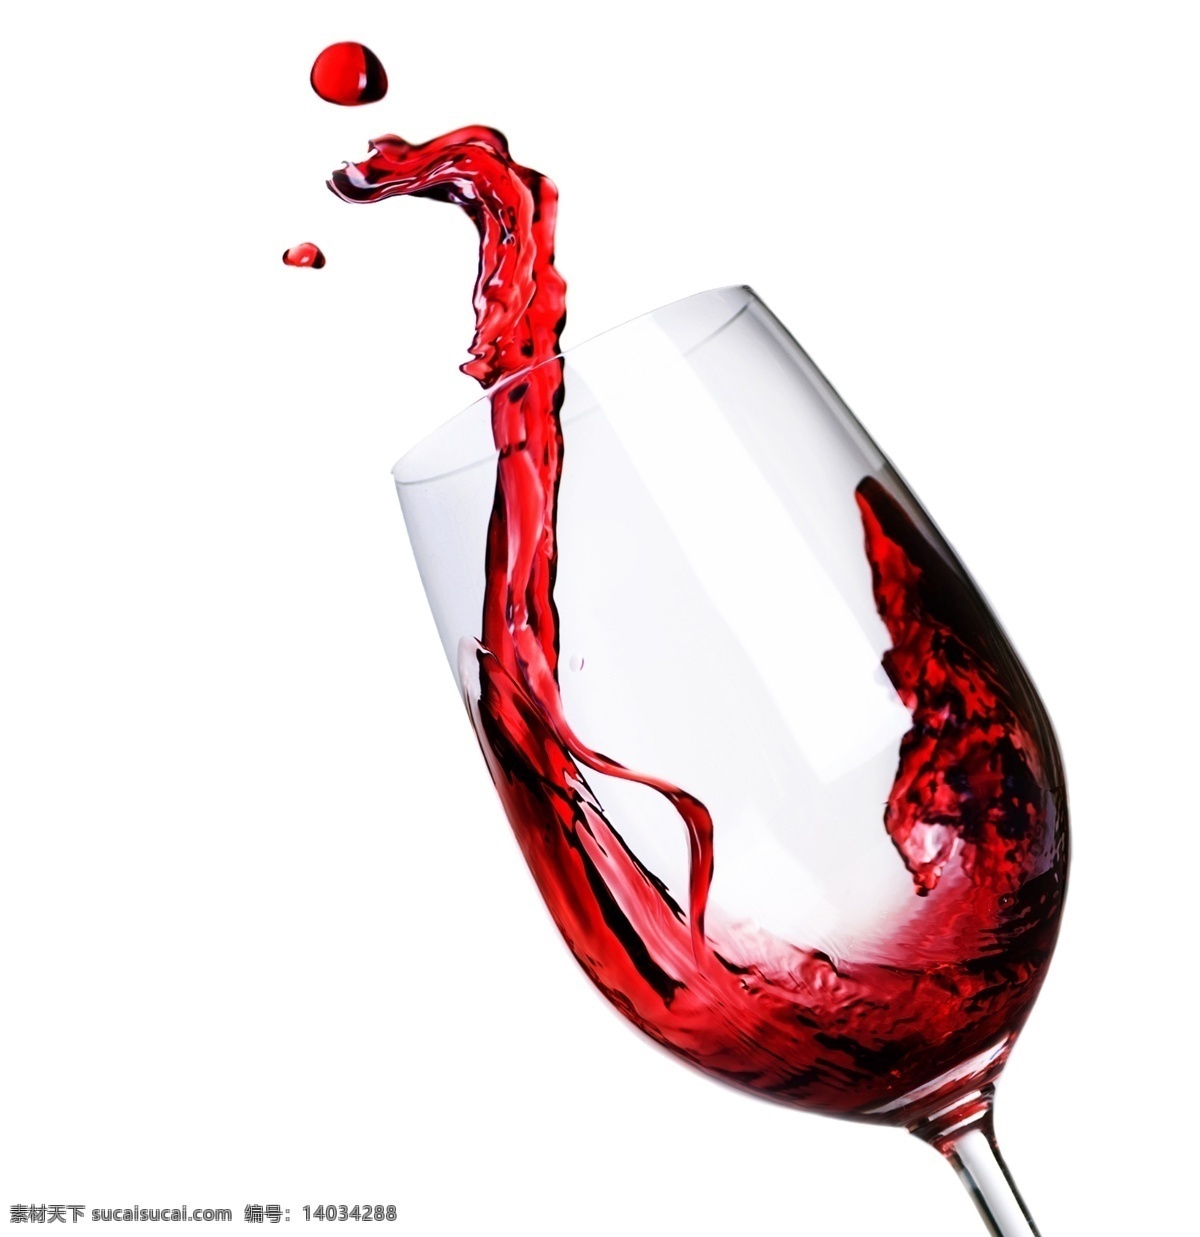 红酒图片 红酒 红酒素材 葡萄酒 红酒桶 葡萄 红酒杯 红酒瓶